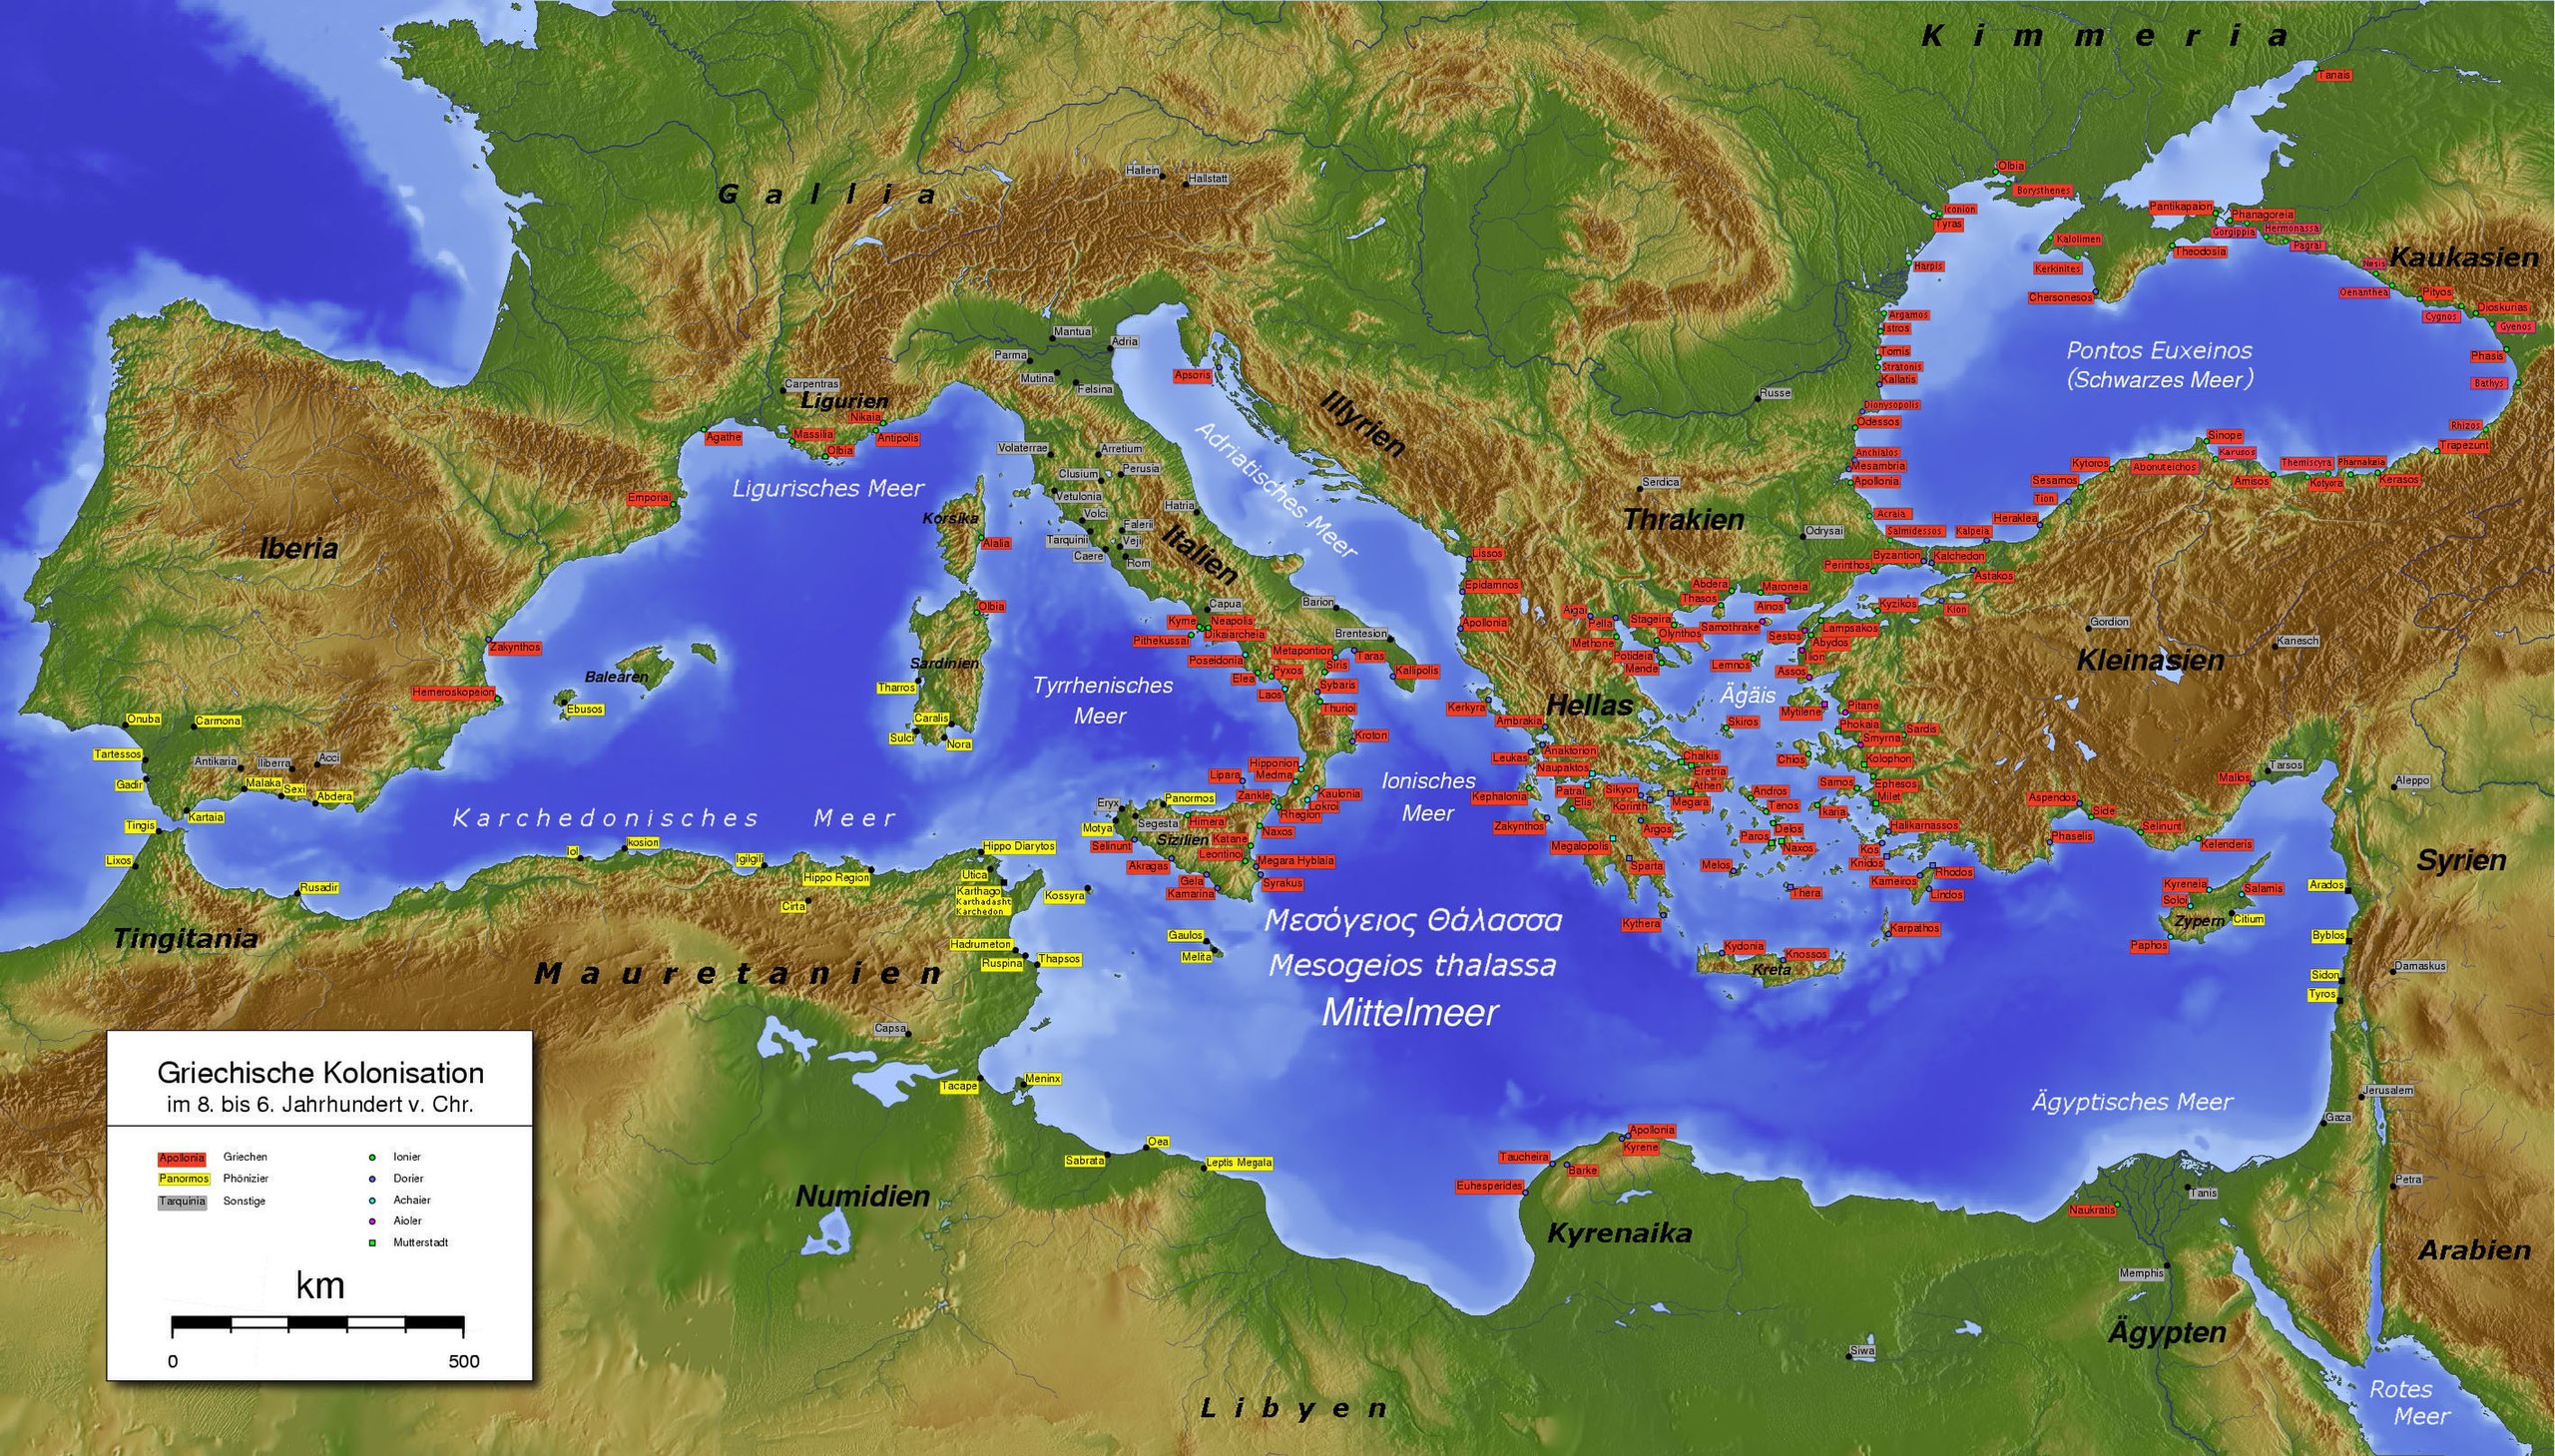 約公元前6世紀的地中海。黃色標籤為腓尼基人建立的城市，紅色為希臘人建立的城市，灰色為其他民族建立的城市。